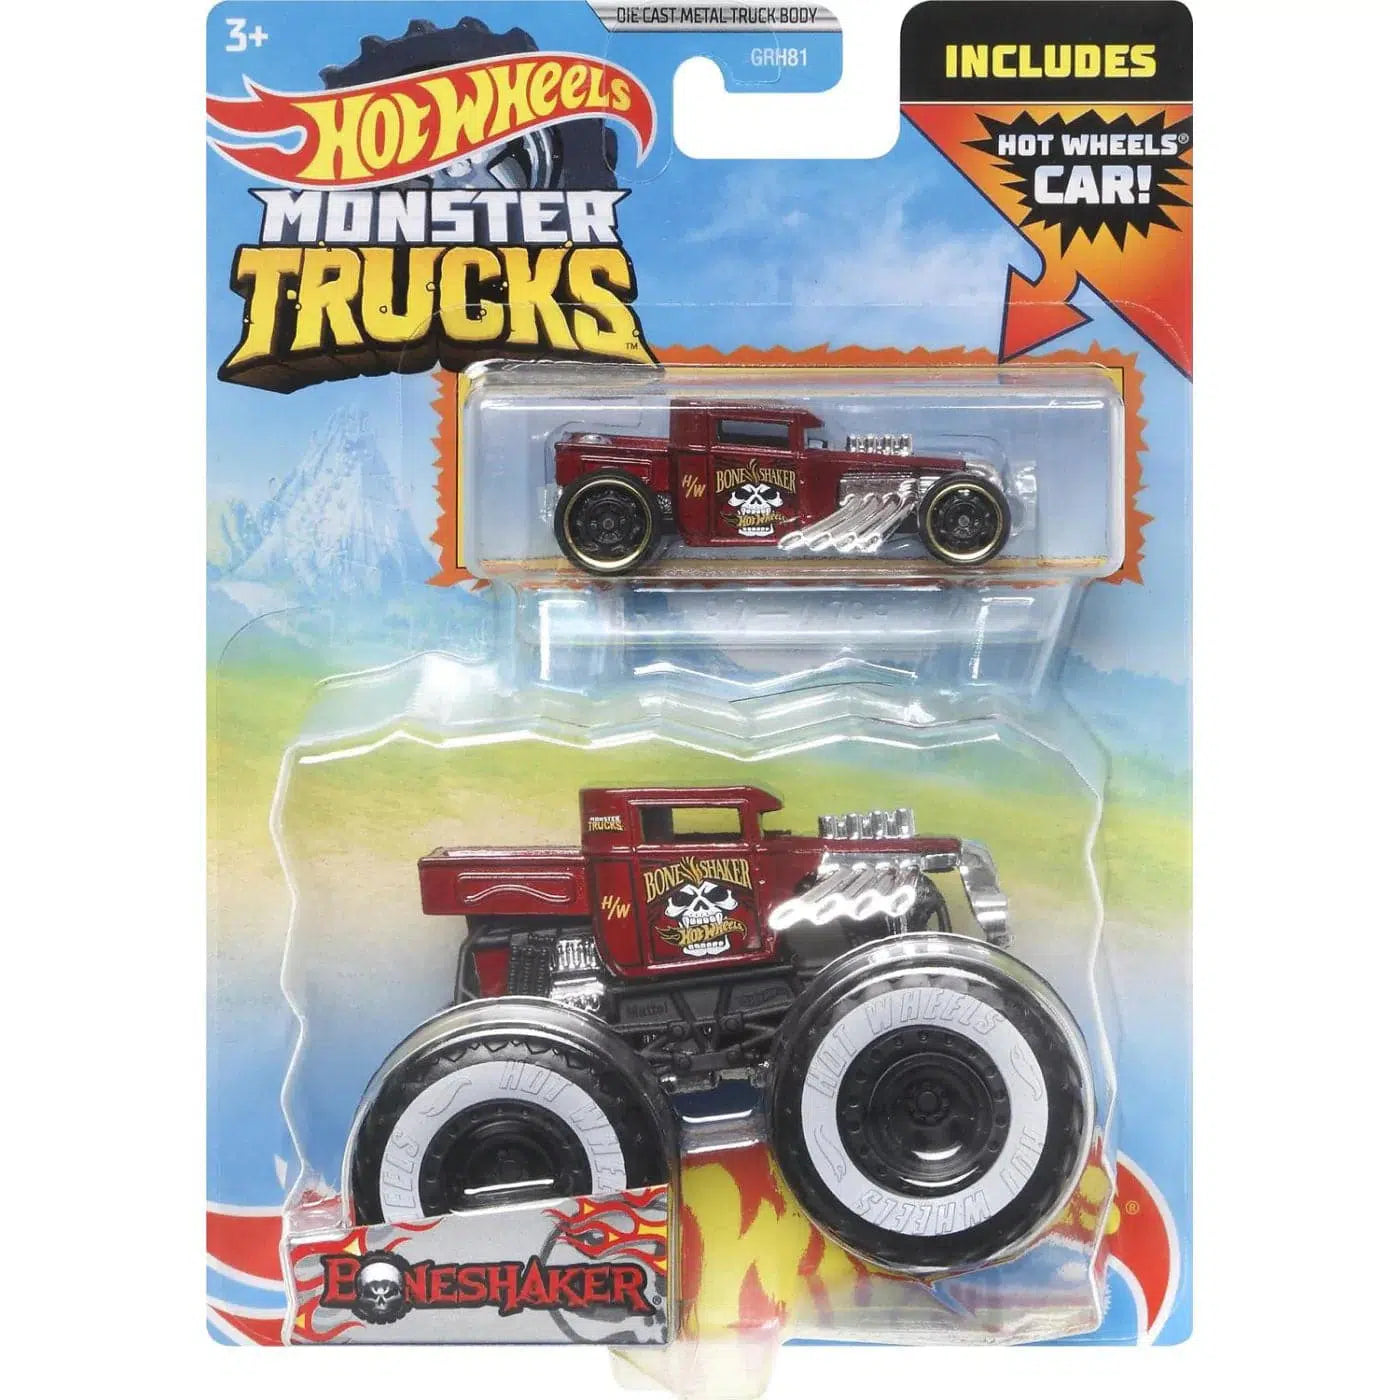 The Very Best of Bone Shaker!  Hot Wheels Monster Trucks 